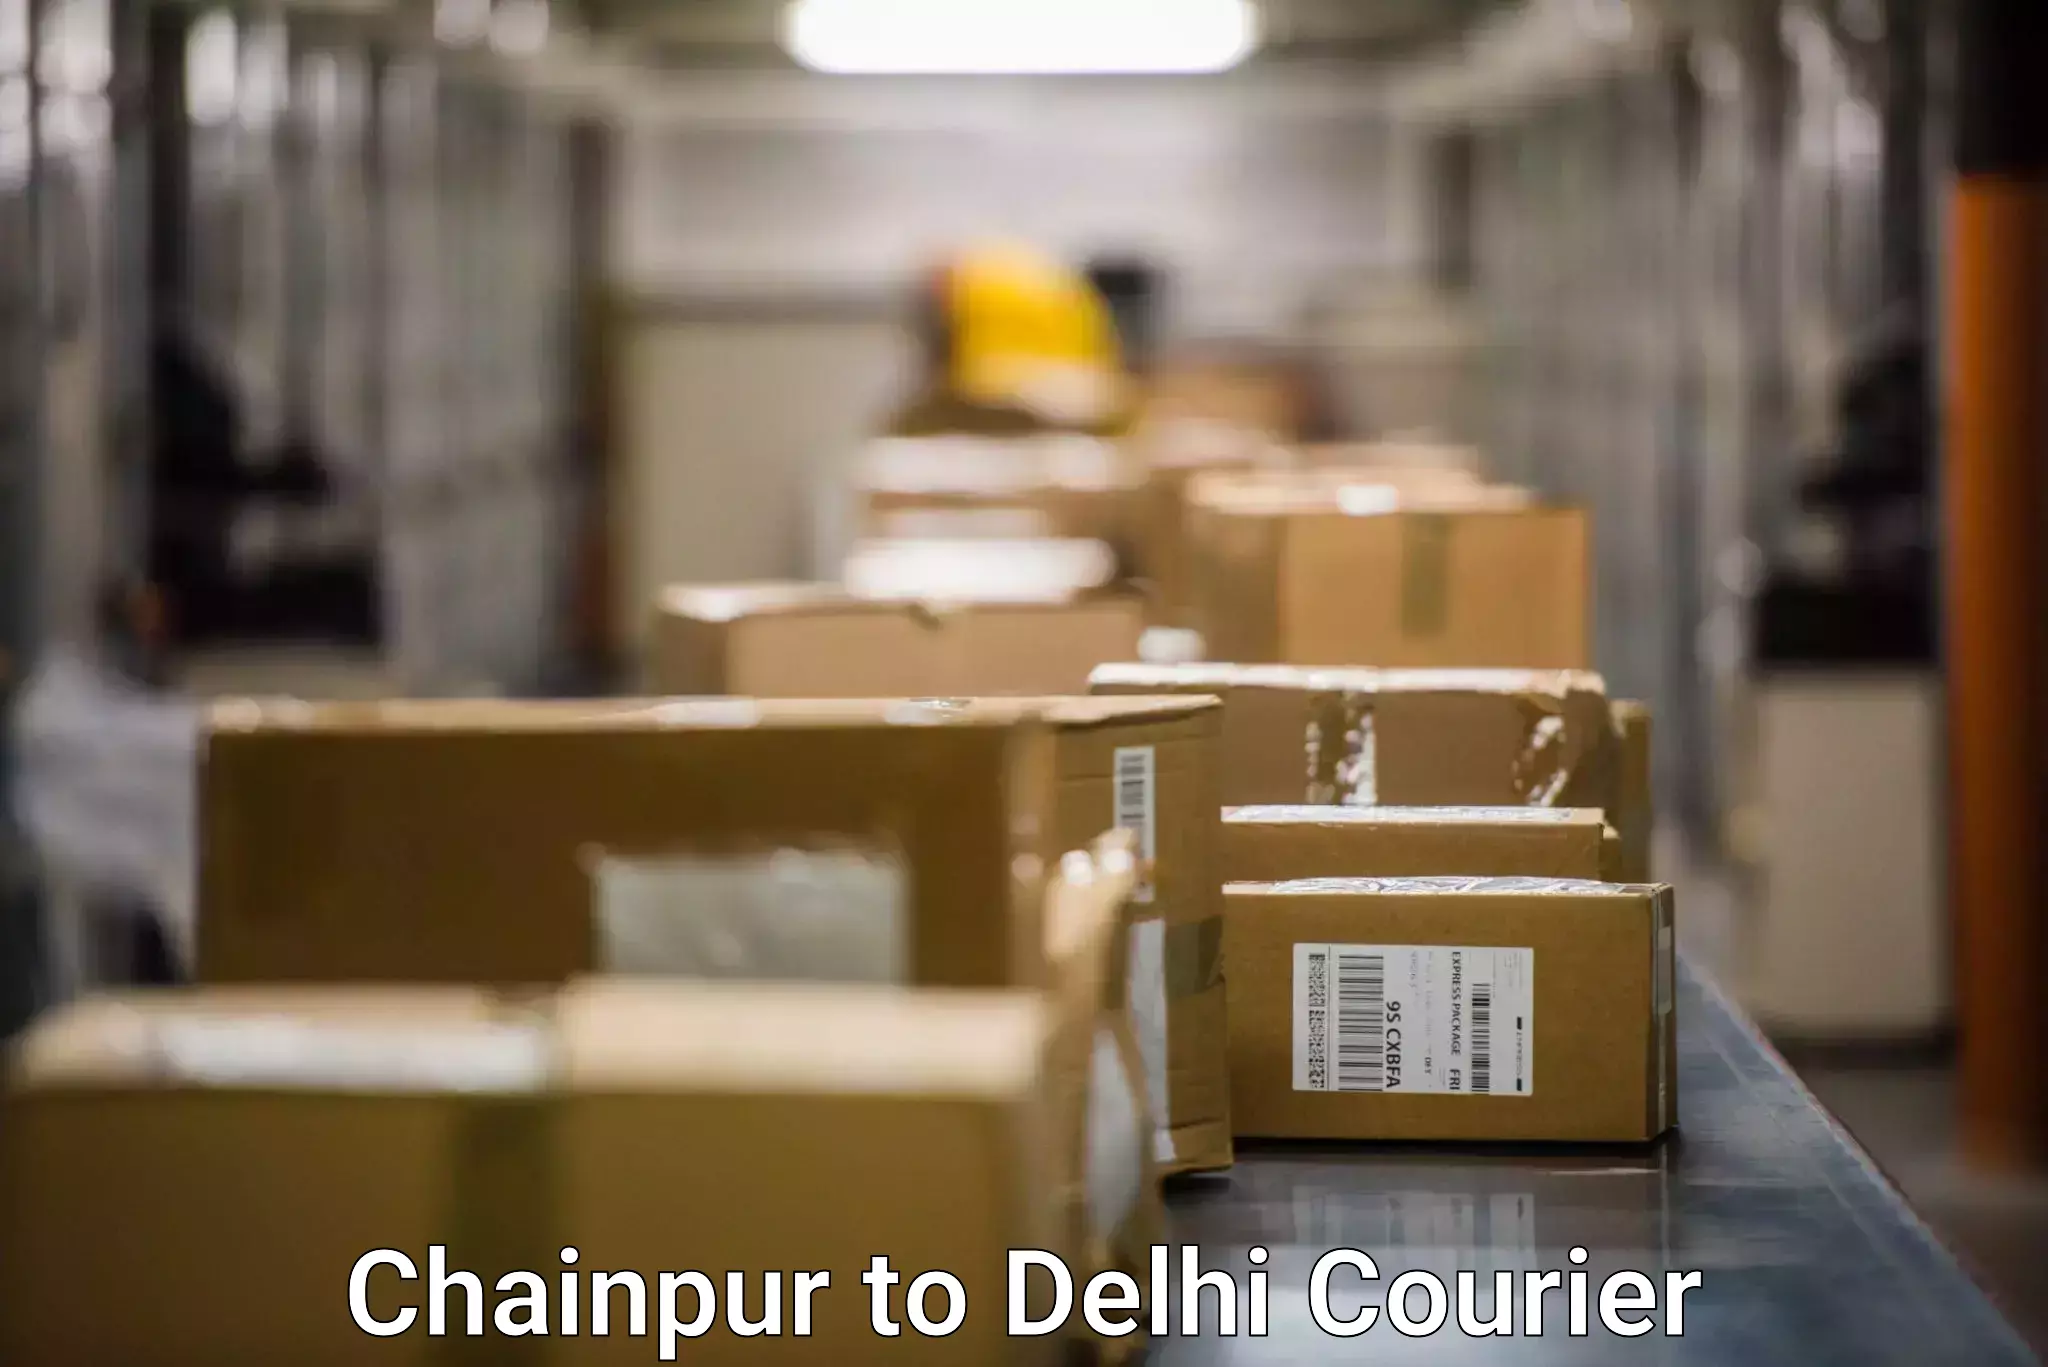 Door-to-door freight service Chainpur to Sansad Marg